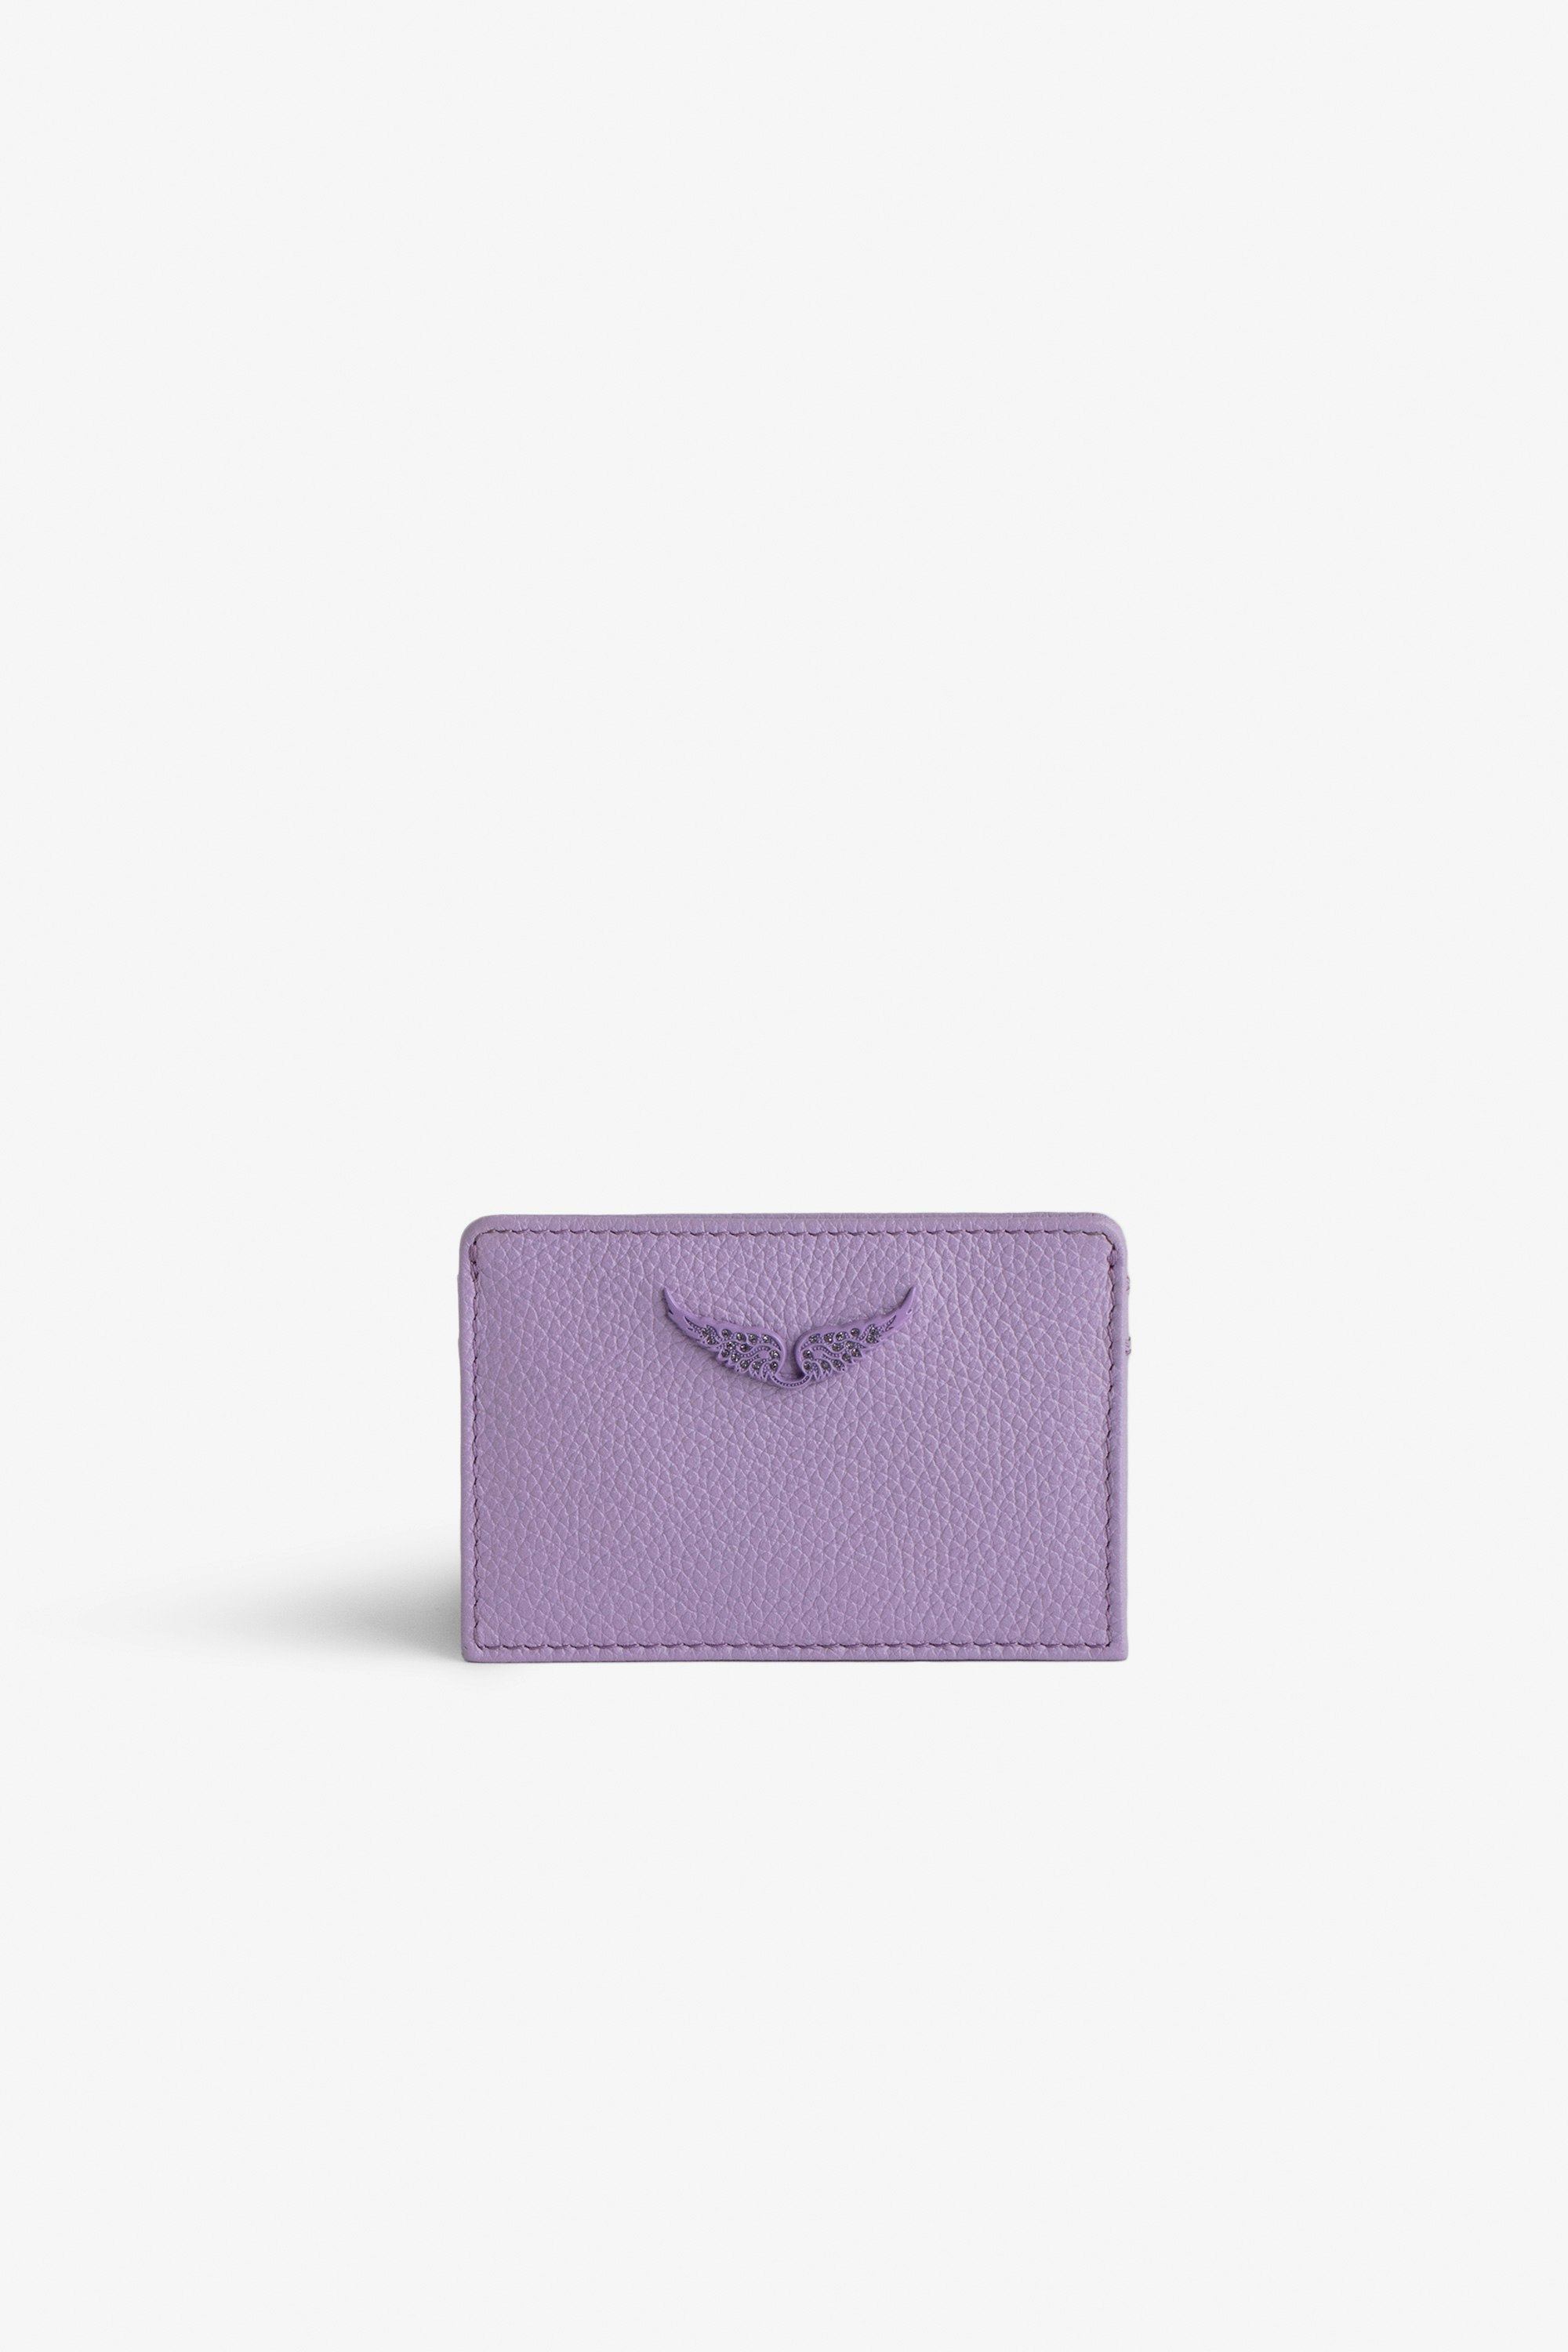 Porte-Cartes ZV Pass - Porte-cartes en cuir grainé violet à charm ailes en strass.